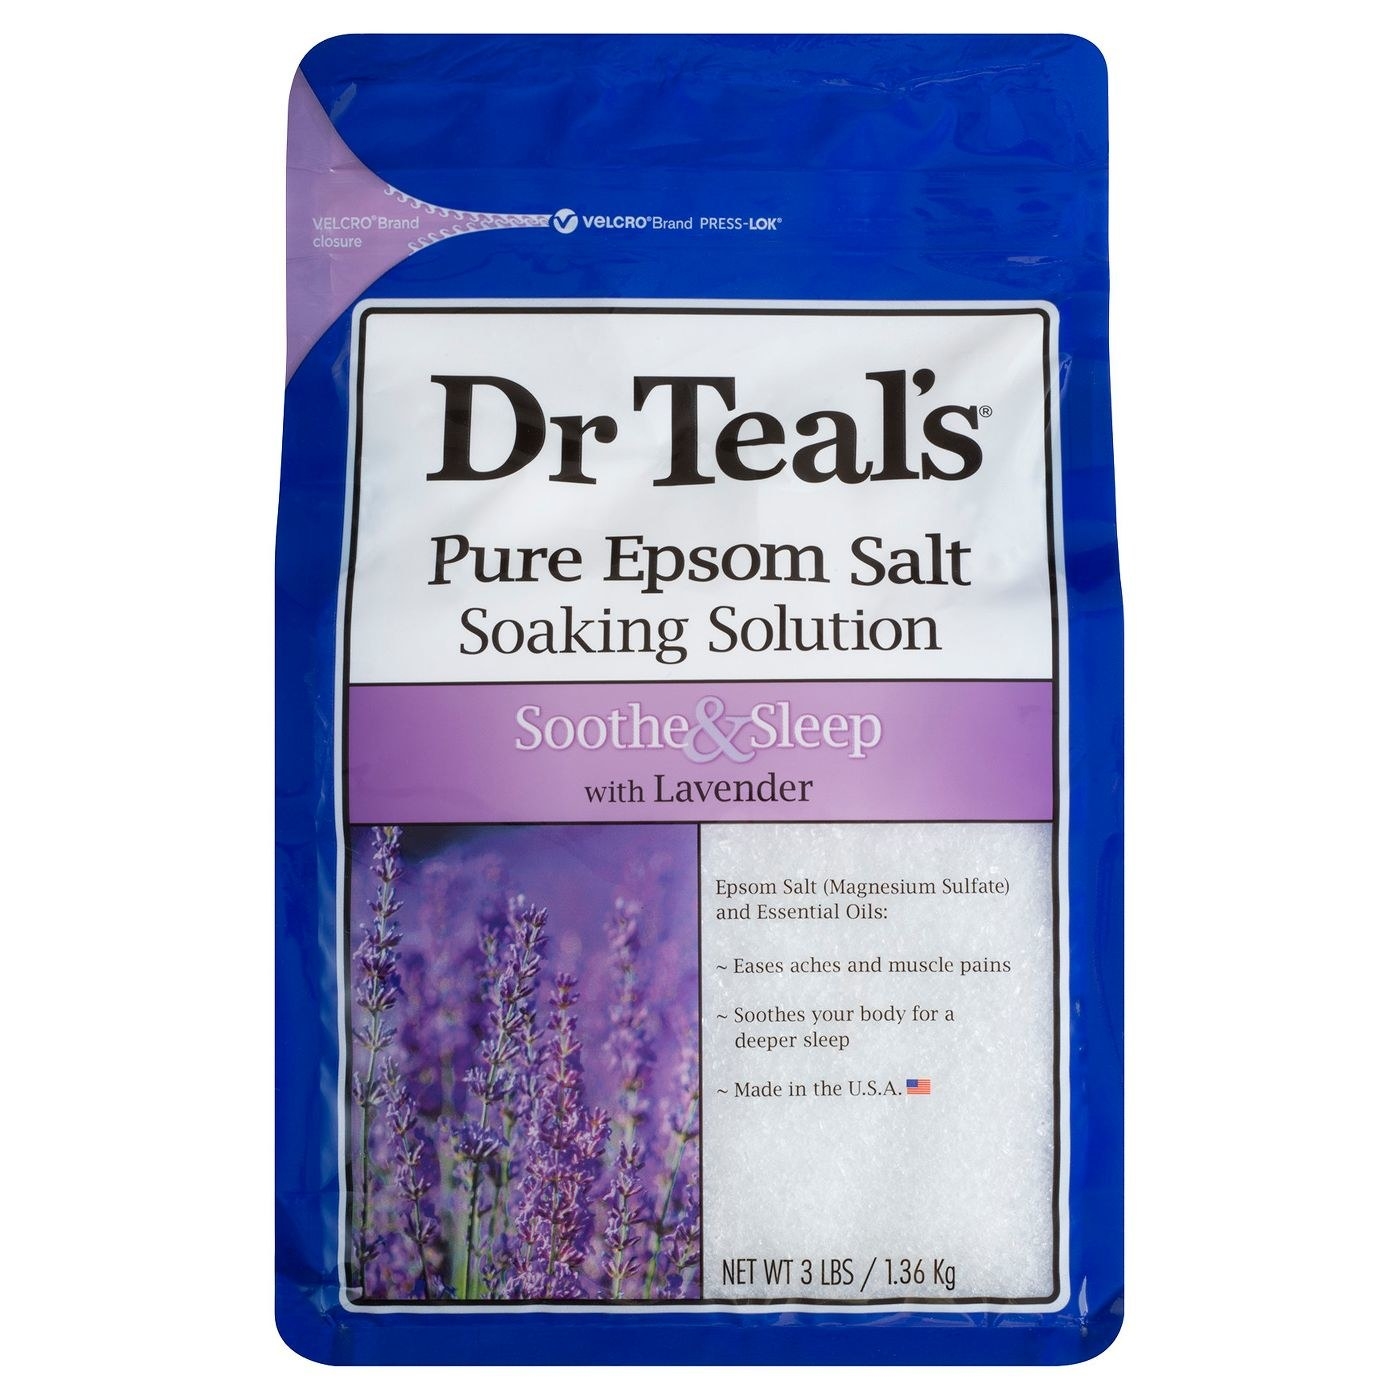 A bag of Dr. Teals lavender epsom salt